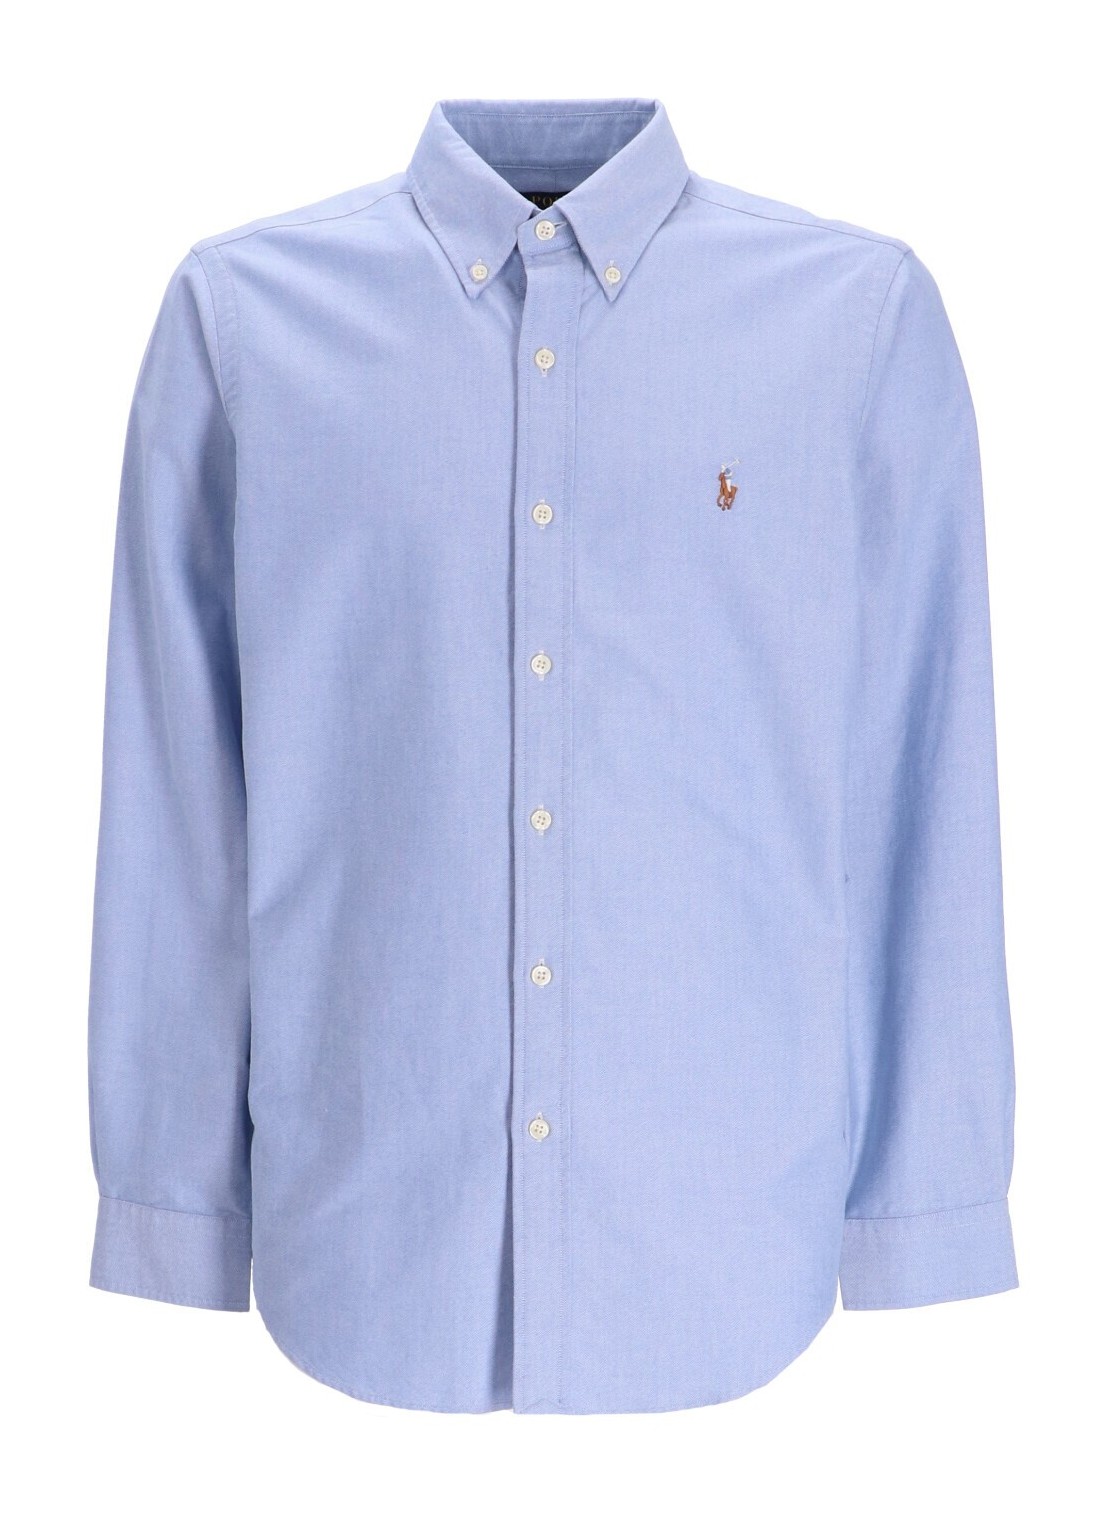 Camiseria polo ralph lauren shirt man cubdppcs-long sleeve-sport shirt 710792041002 blue talla XXL
 